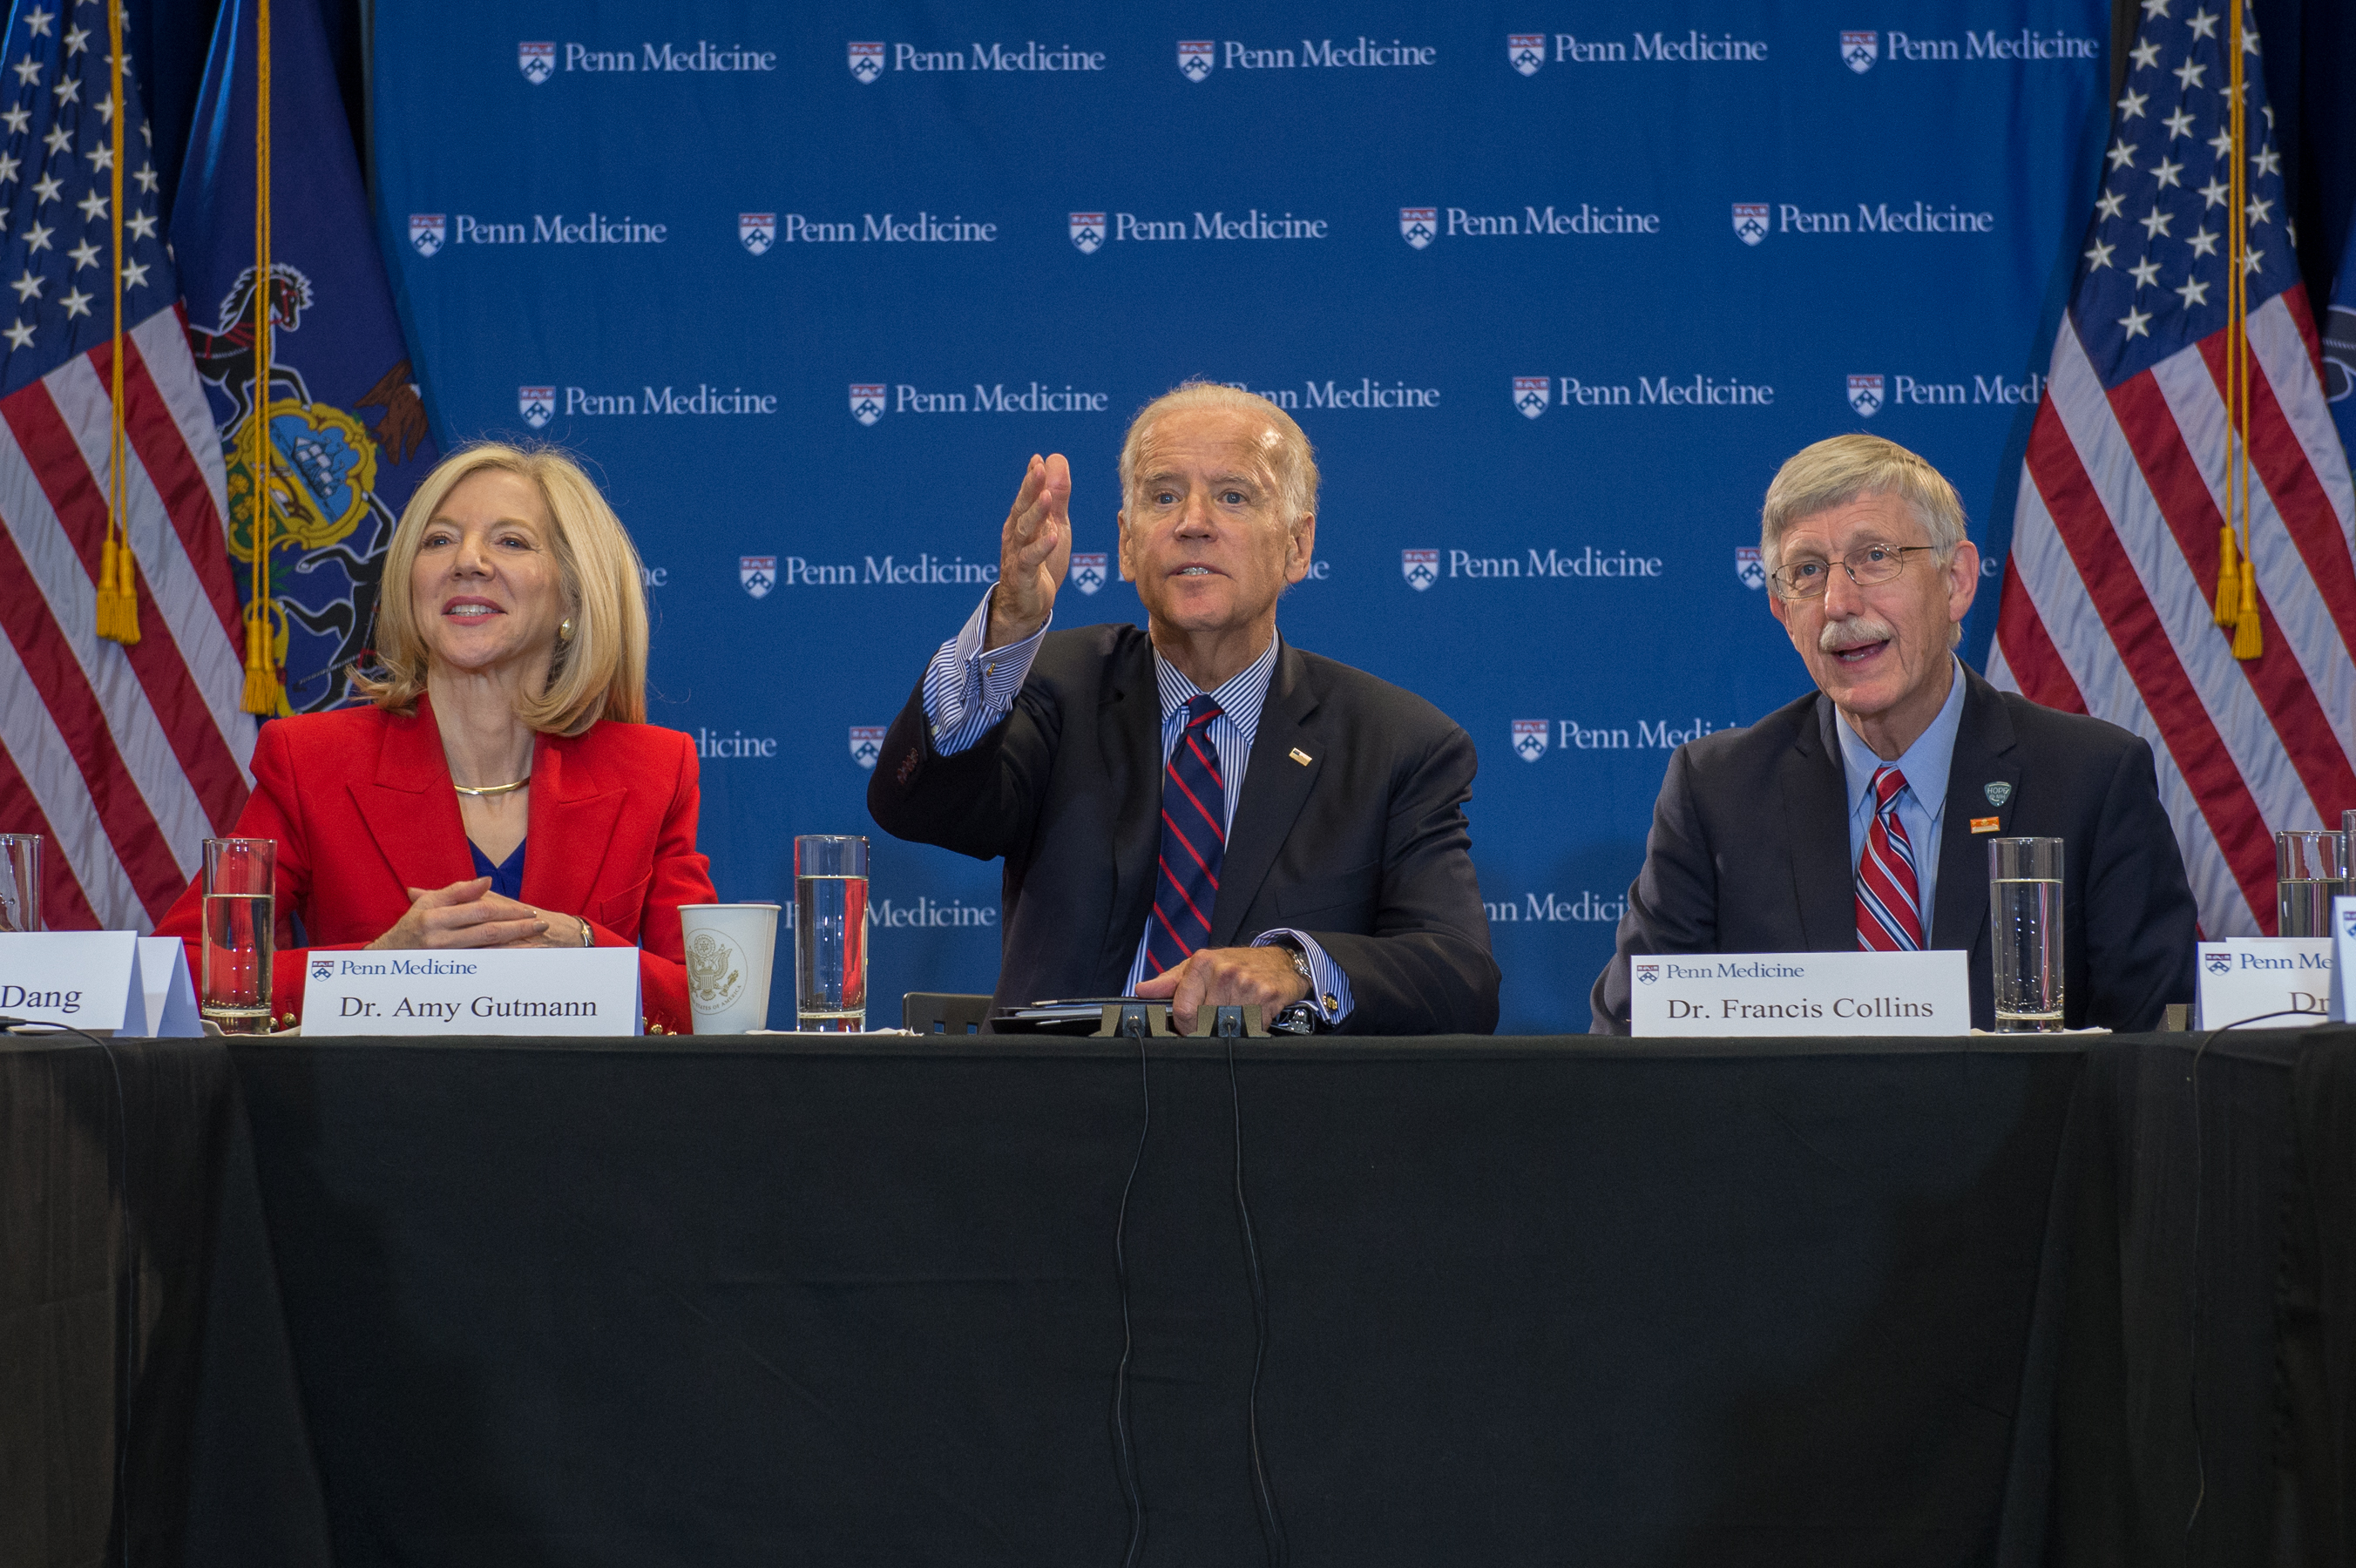 Vice President Joe Biden to Lead the Penn Biden Center for Diplomacy and Global Engagement